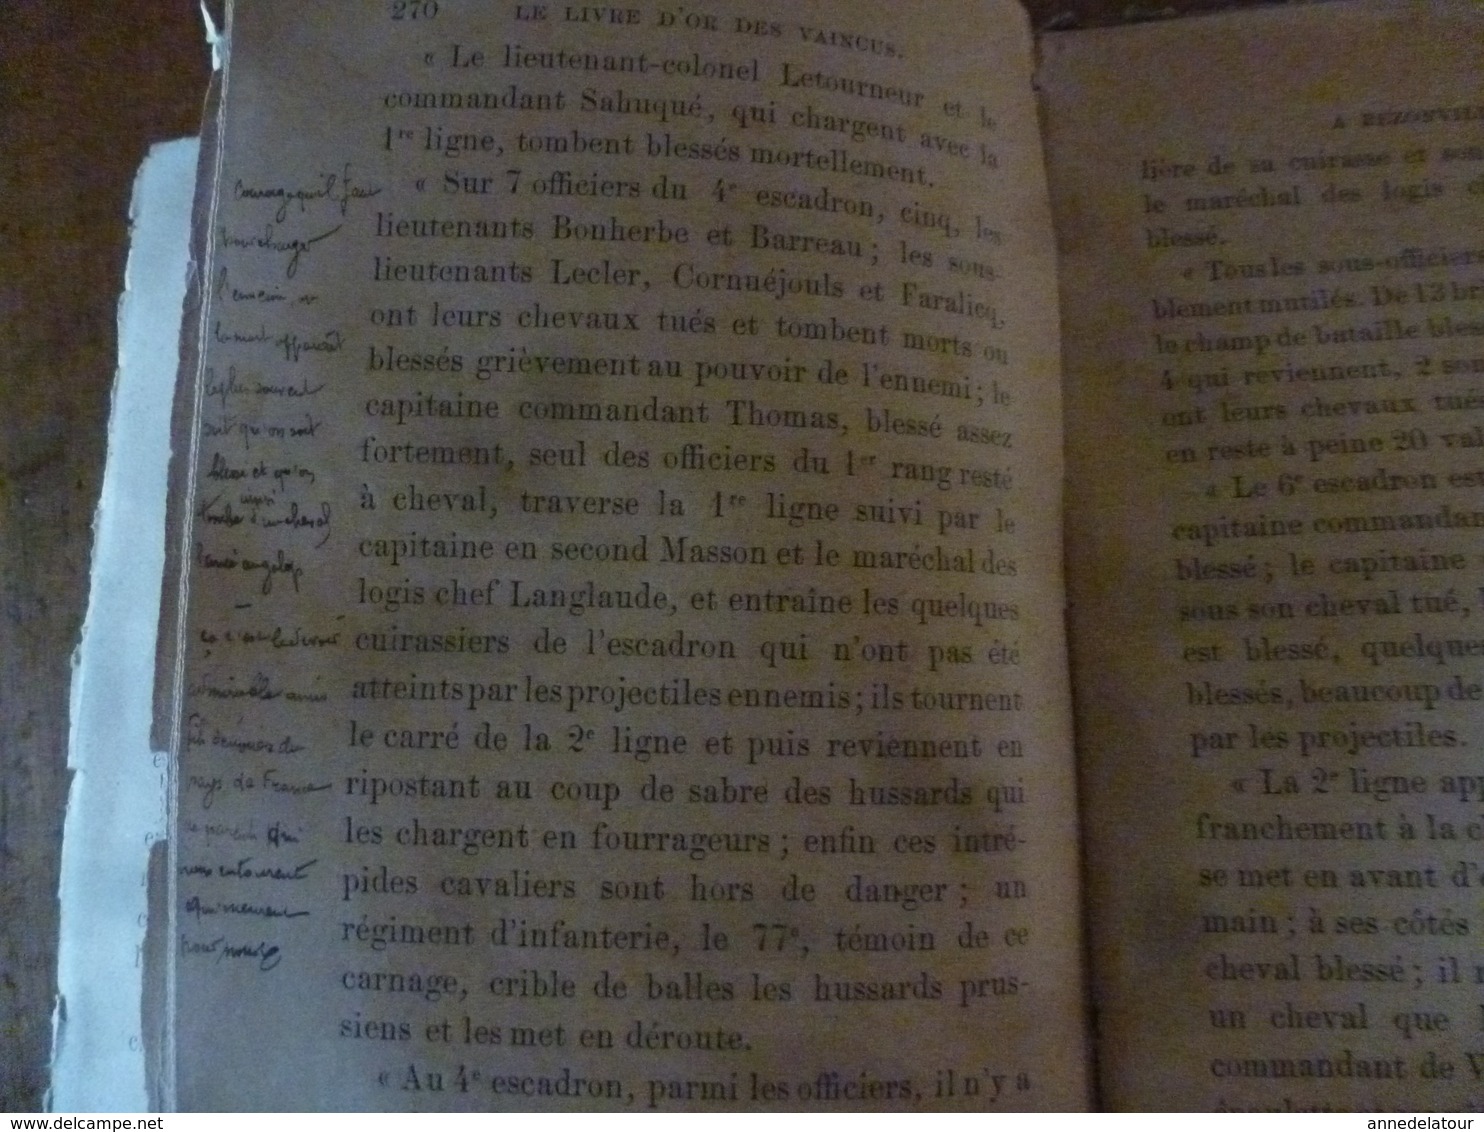 1888 LES HÉROS de la DÉFAITE , récits de la guerre de 1870- 1871 ,par Joseph Turquan (nombreuses annotations à la main)